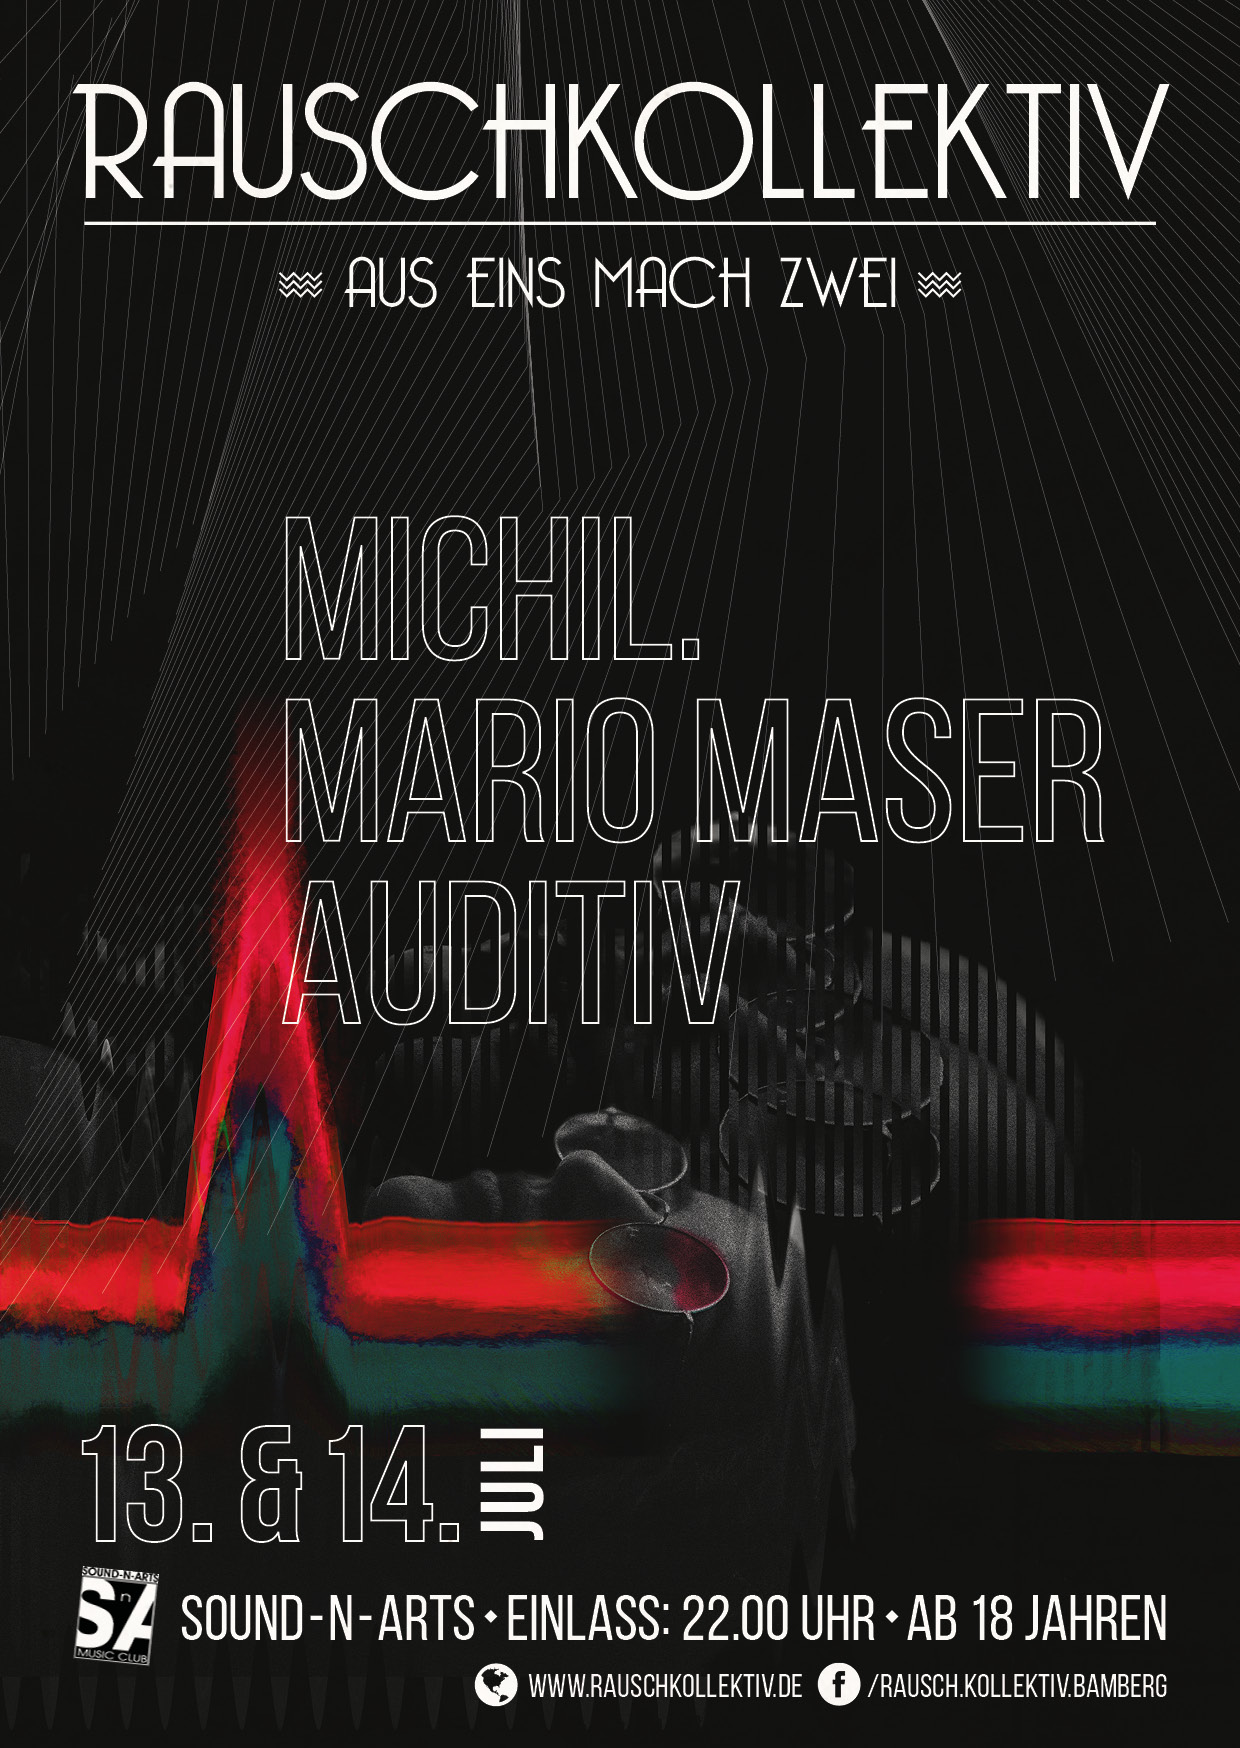 13. Jul: Rauschkollektiv - aus eins mach zwei 1/2 - Mario Maser & MichiL.